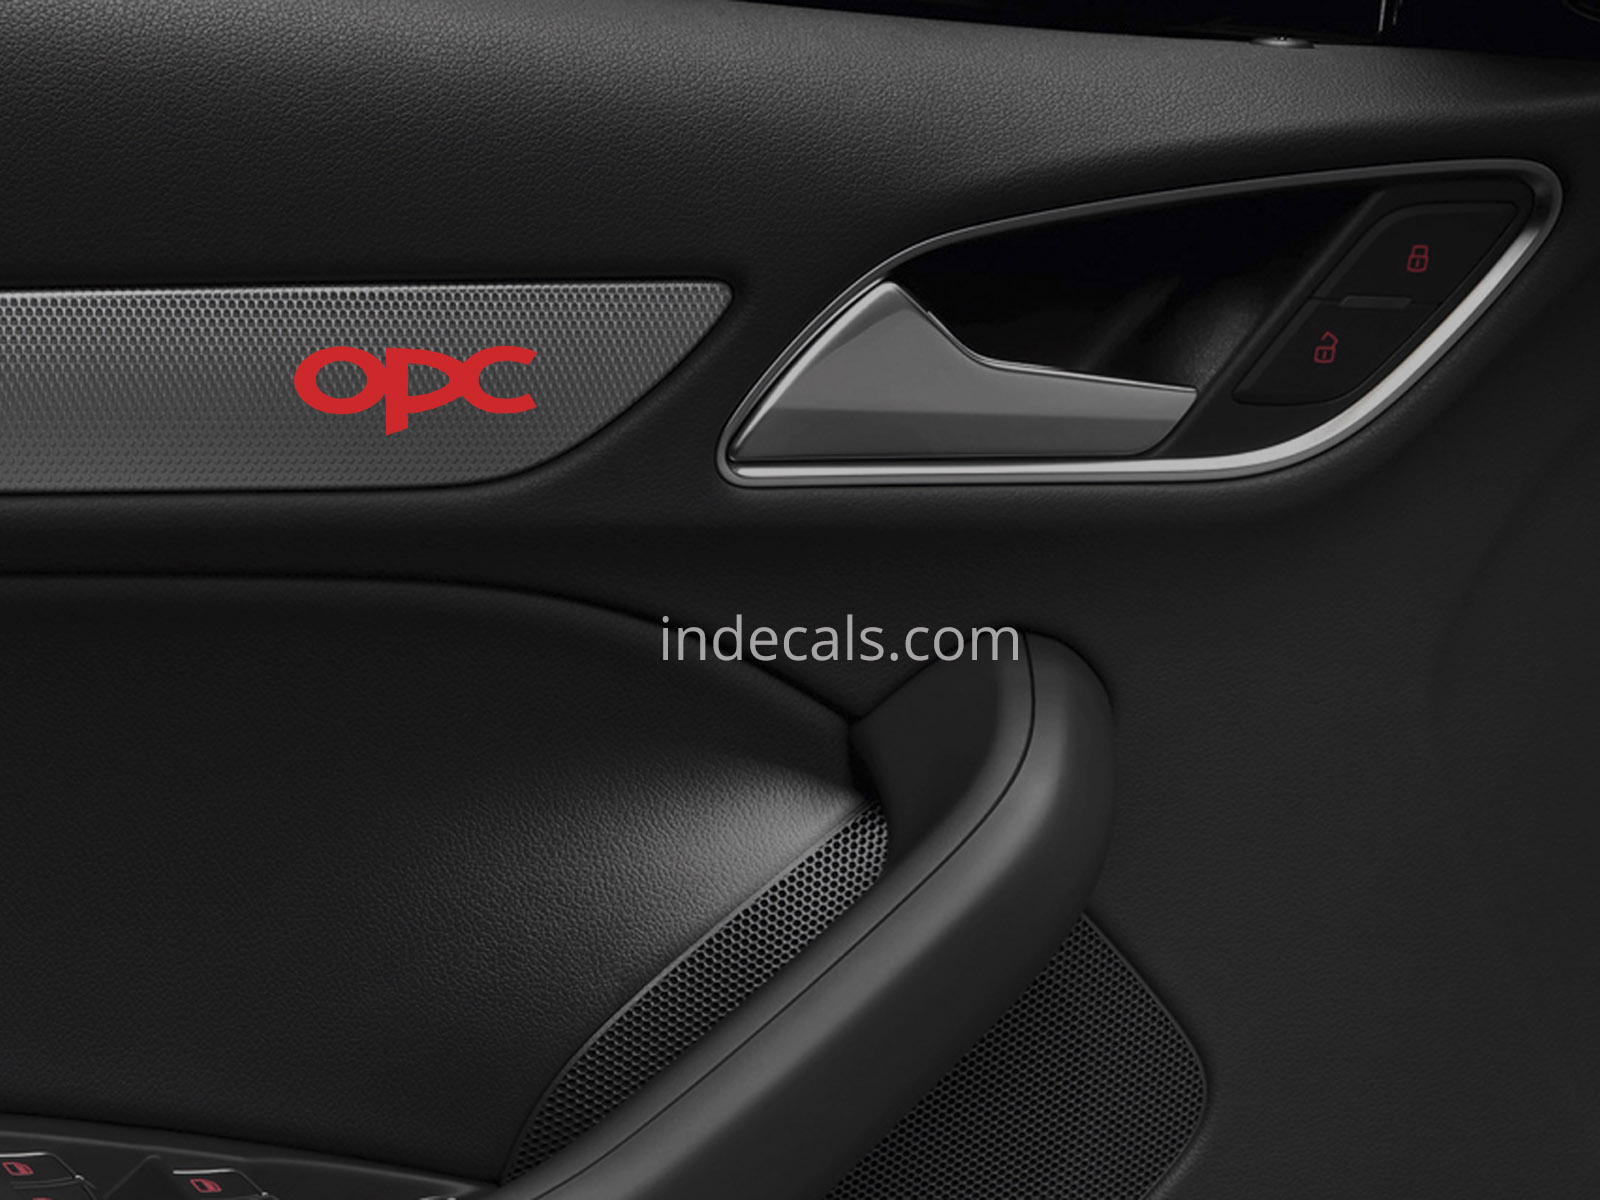 6 x Opel OPC Stickers for Door Trim - Red